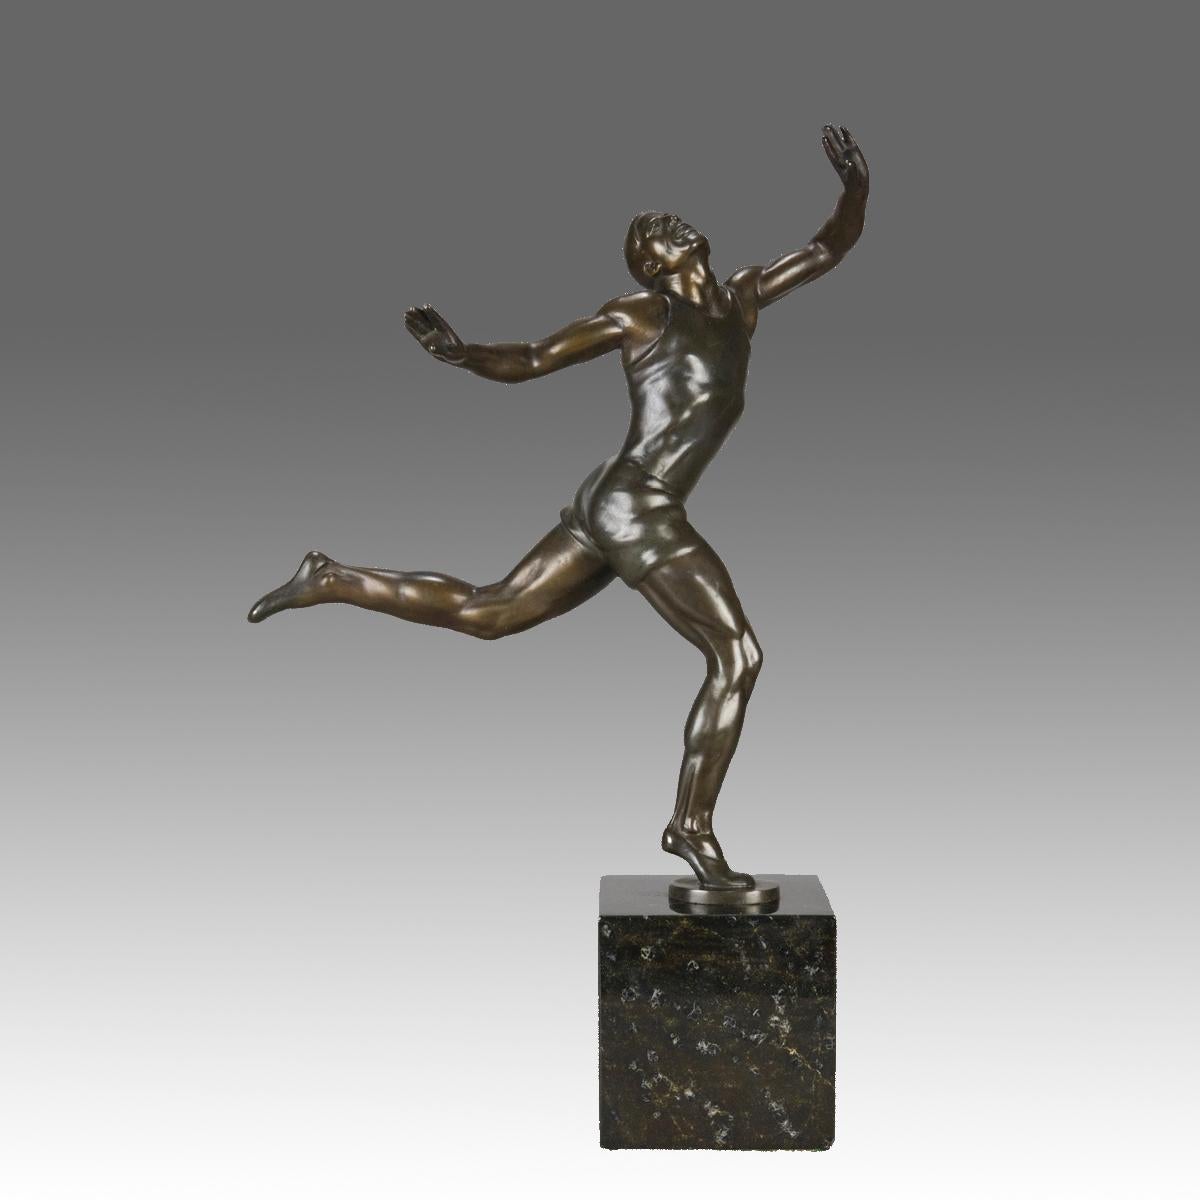 Très belle étude en bronze du début du 20e siècle représentant un athlète olympique musclé sur le point de franchir la ligne d'arrivée. Le bronze présente une excellente patine brune et de très beaux détails de surface finis à la main. Il est signé